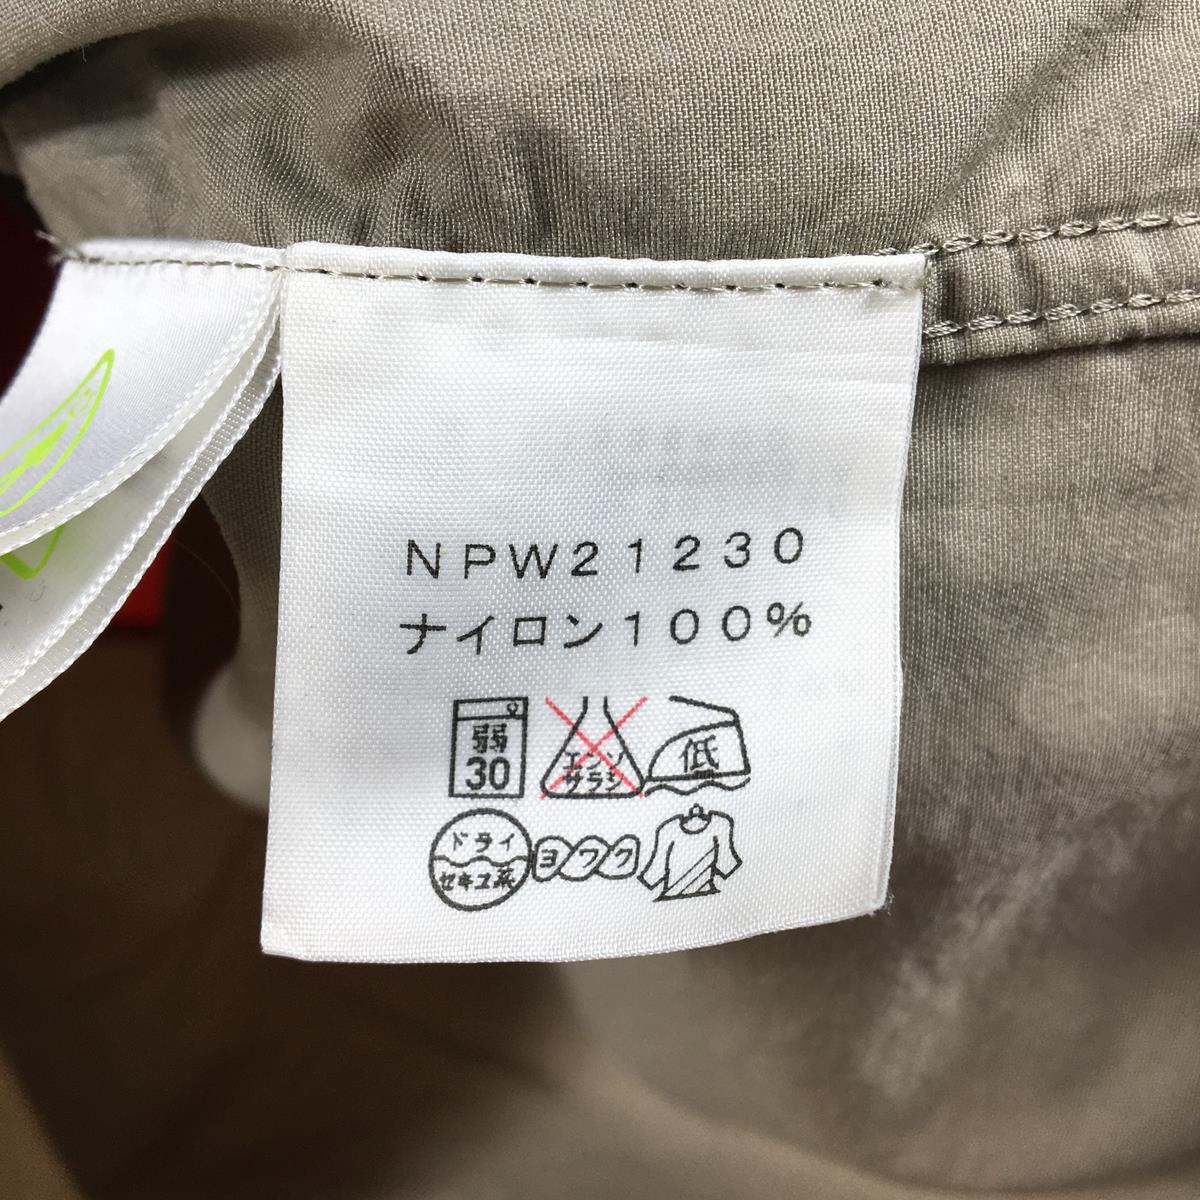 【WOMEN's M】 ノースフェイス コンパクト ジャケット Compact Jacket ウィンドシェル フーディ NORTH FACE NPW21230 レッド系